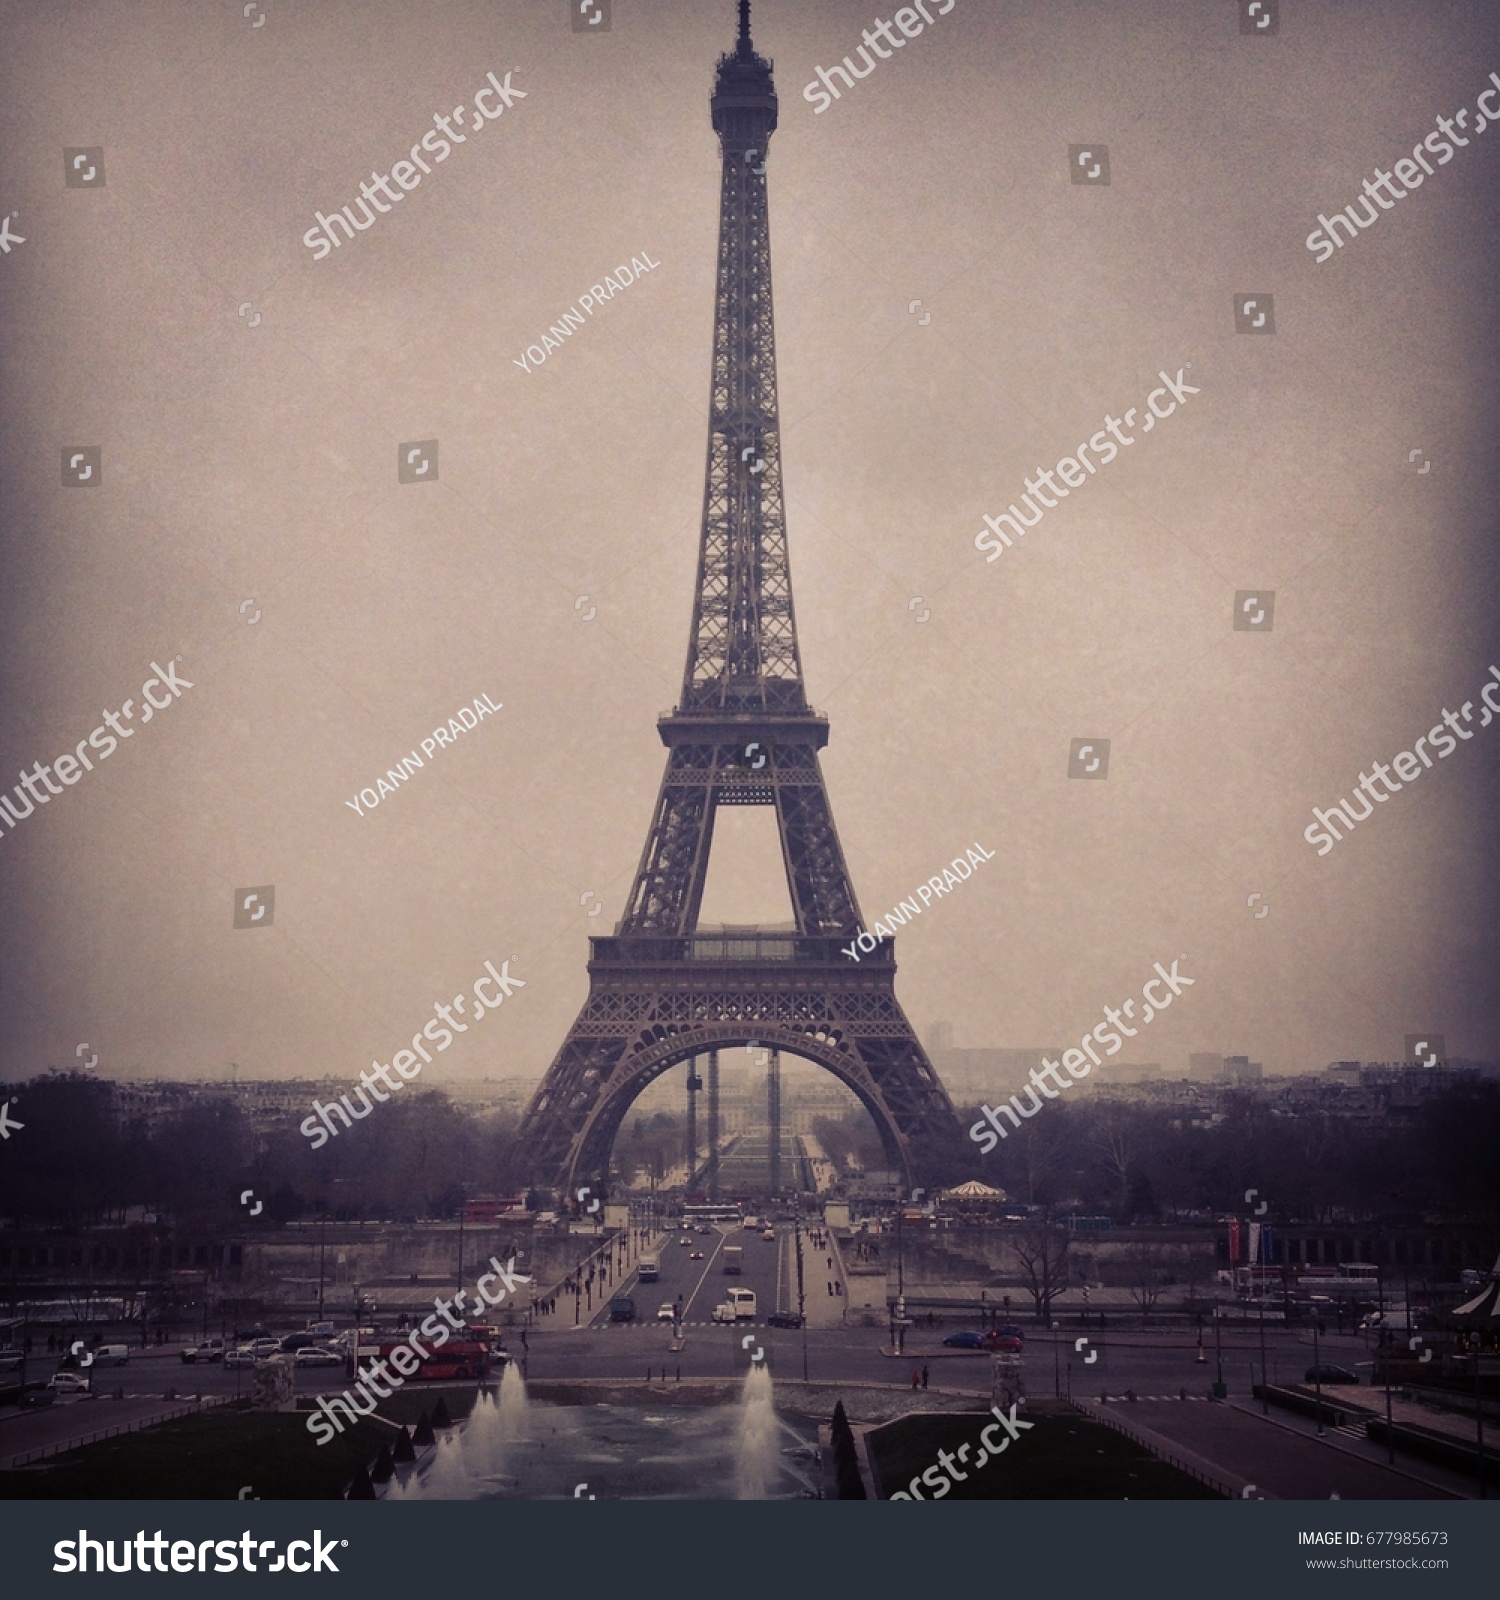 Tour Eiffel #677985673